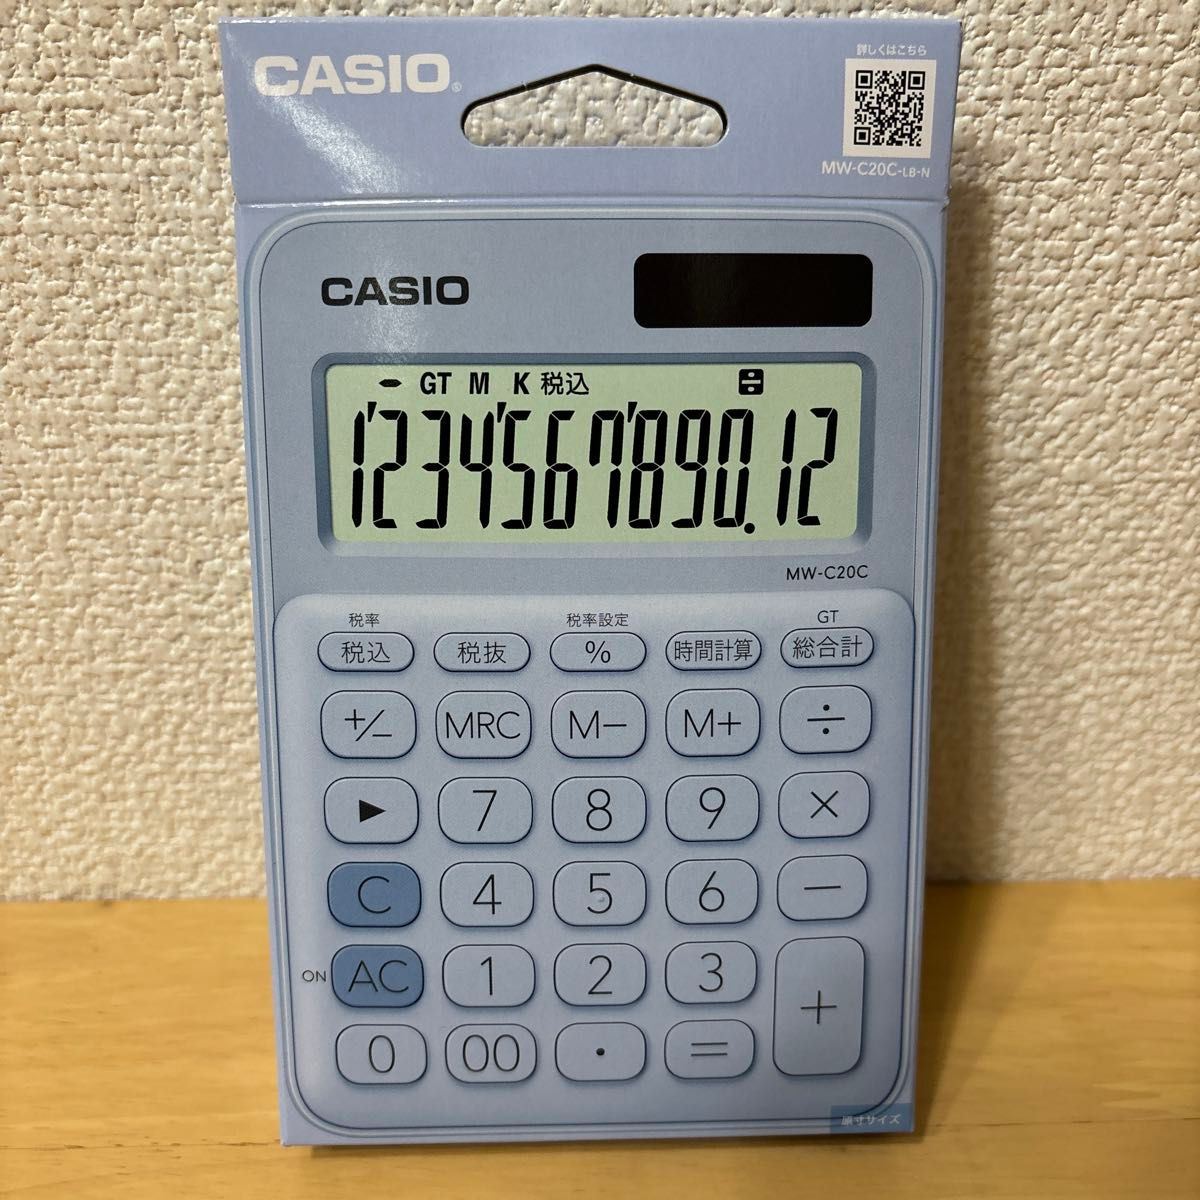 カシオ計算機 電卓 MW-C20C-LB-N ペールブルー タイムセール。